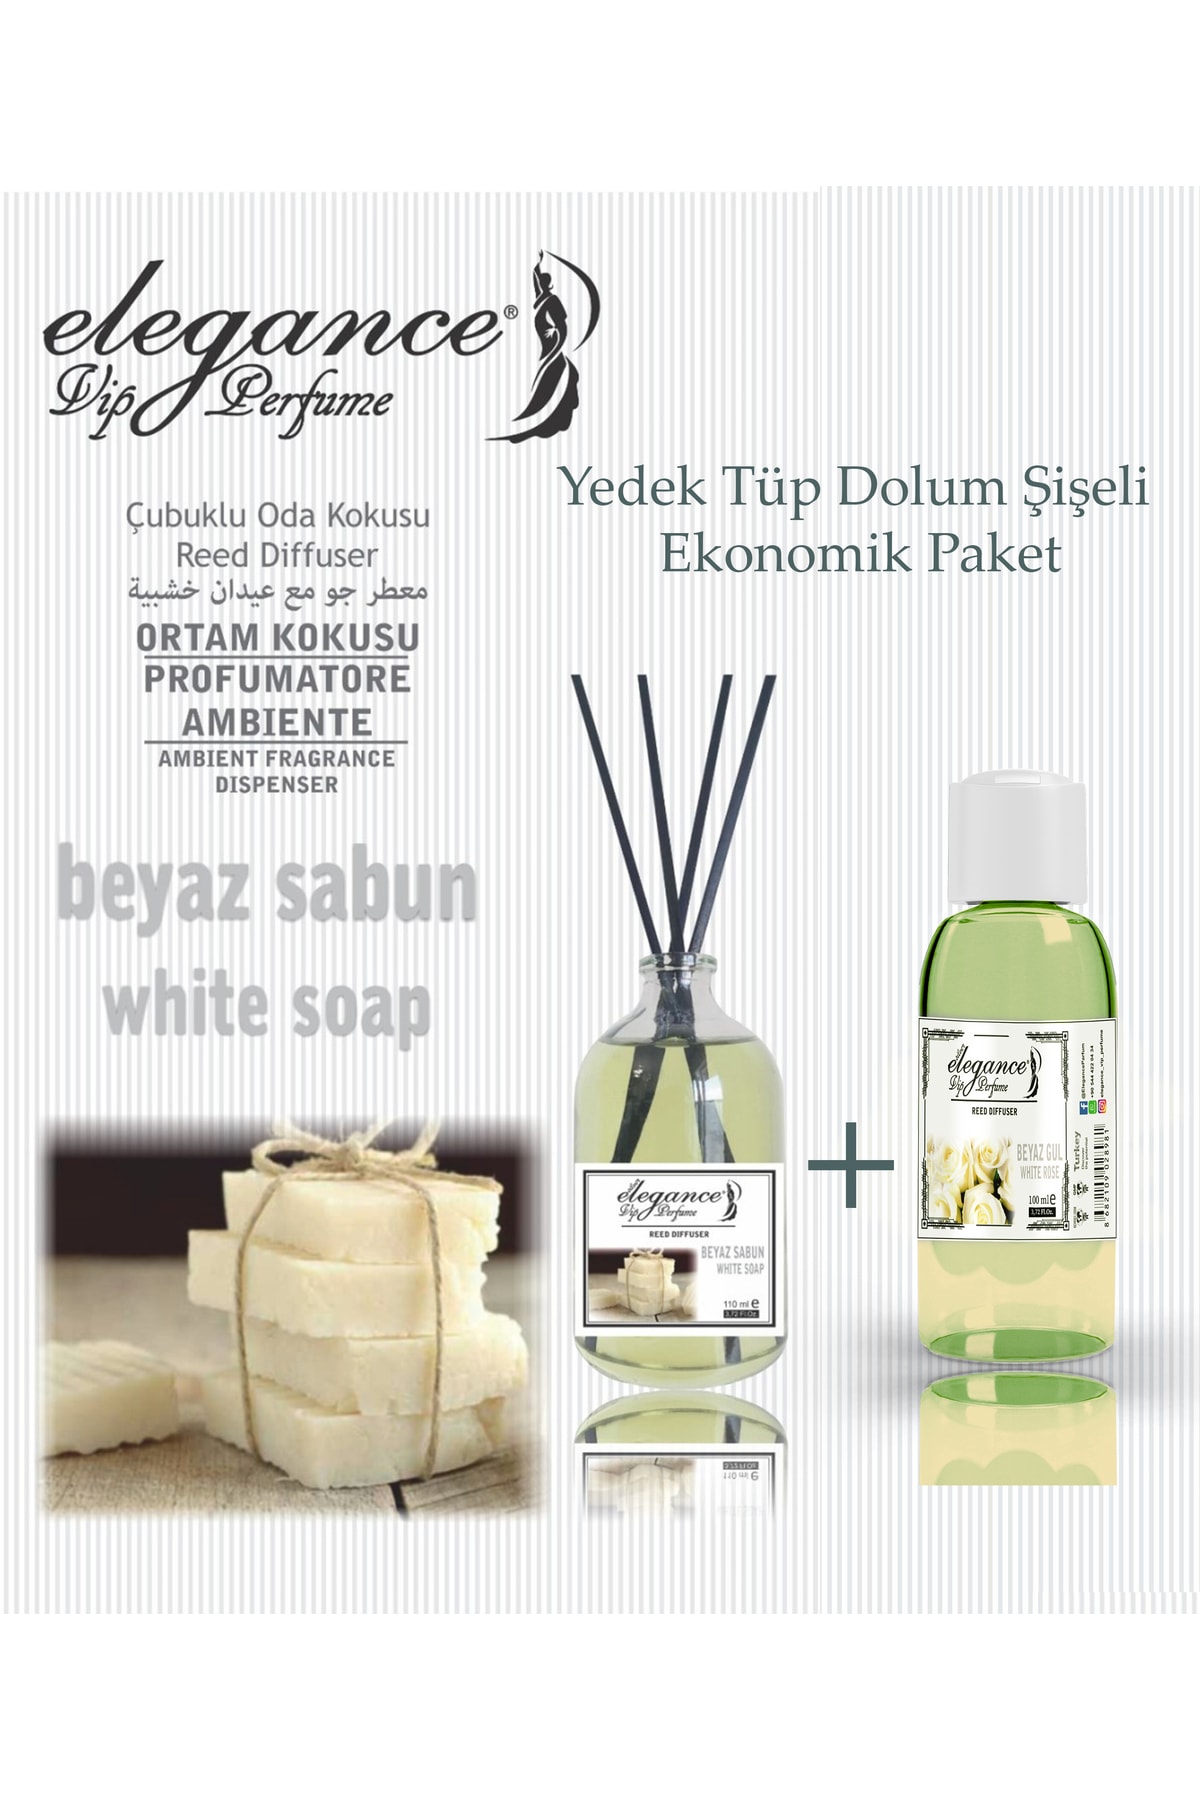 Elegance vip Perfume Beyaz Sabun 110 Ml - Çubuklu Oda & Ortam Kokusu + Yedek Tüp Dolum Şişeli